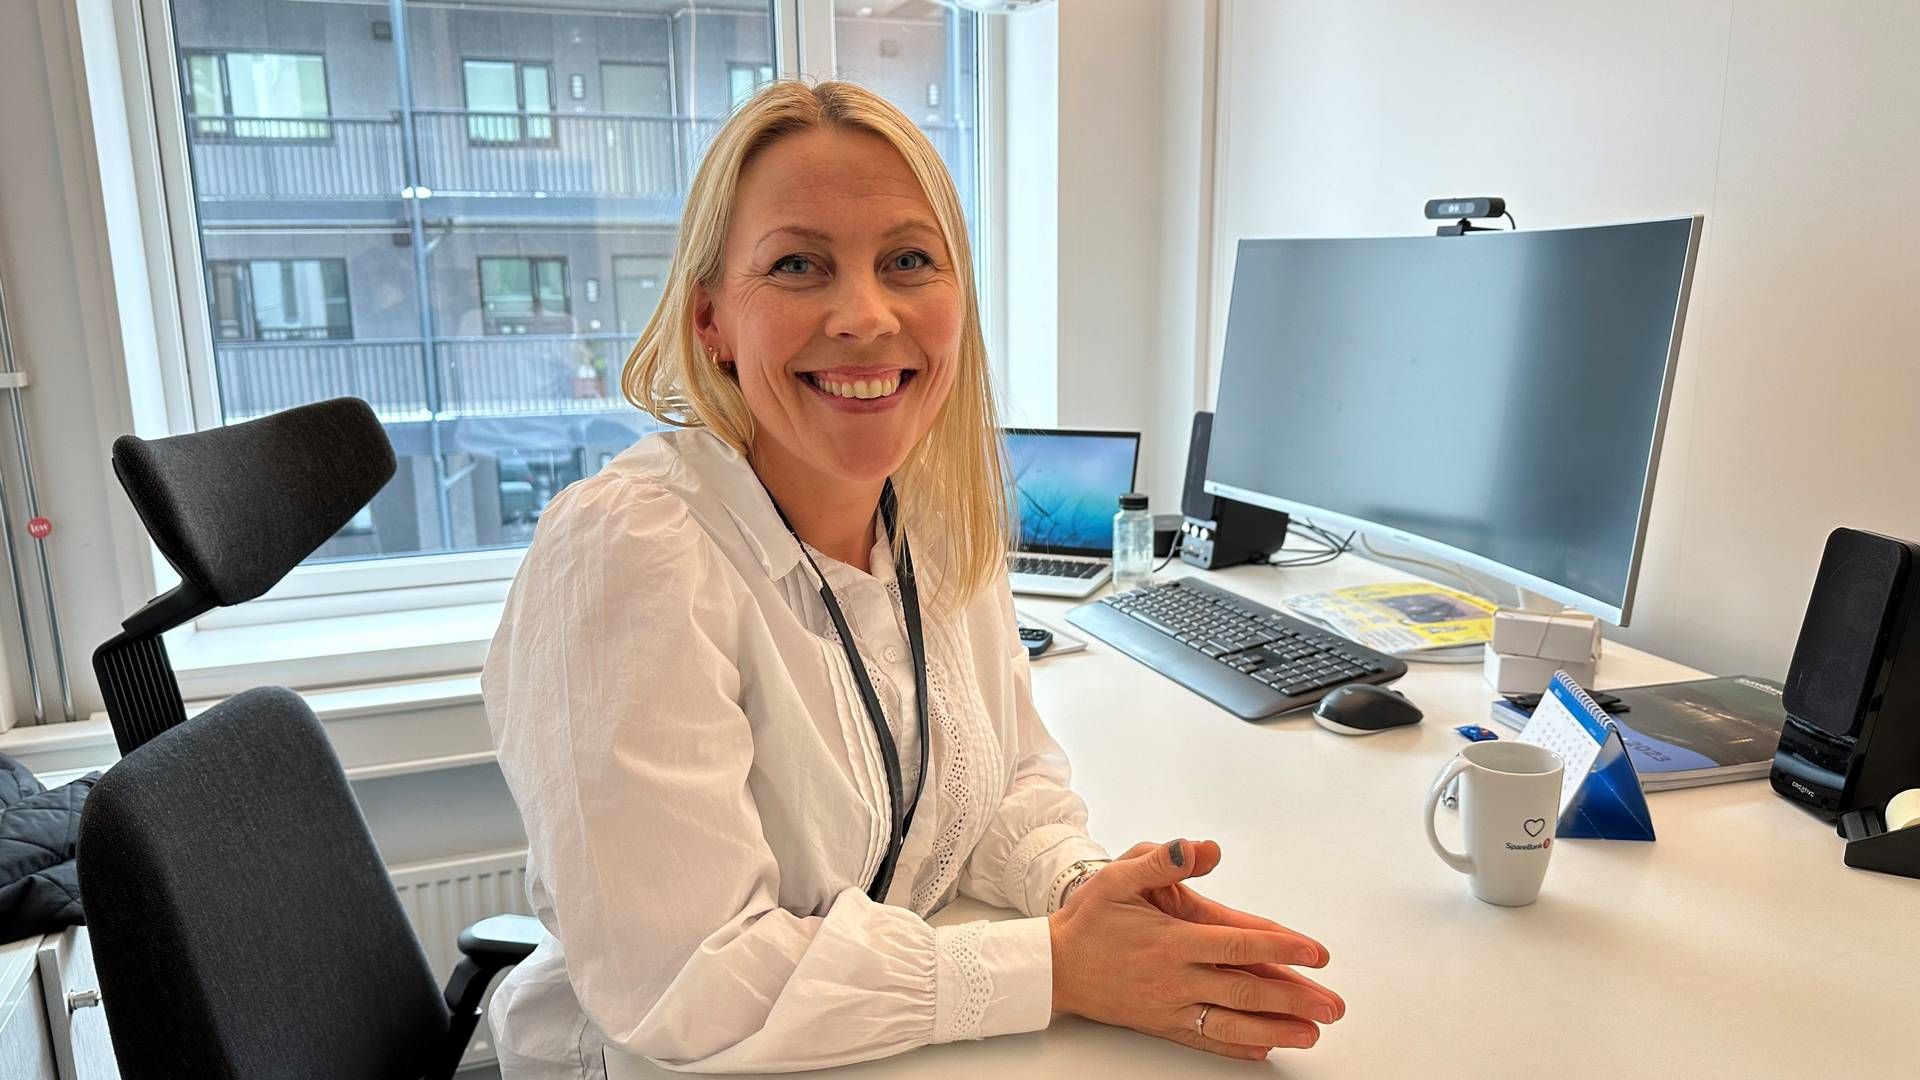 NY BANKSJEF: Line Dahl Slapgard er ny banksjef hos Sparebank 1 Gudbrandsdal. | Foto: Sparebank 1 Gudbrandsdal